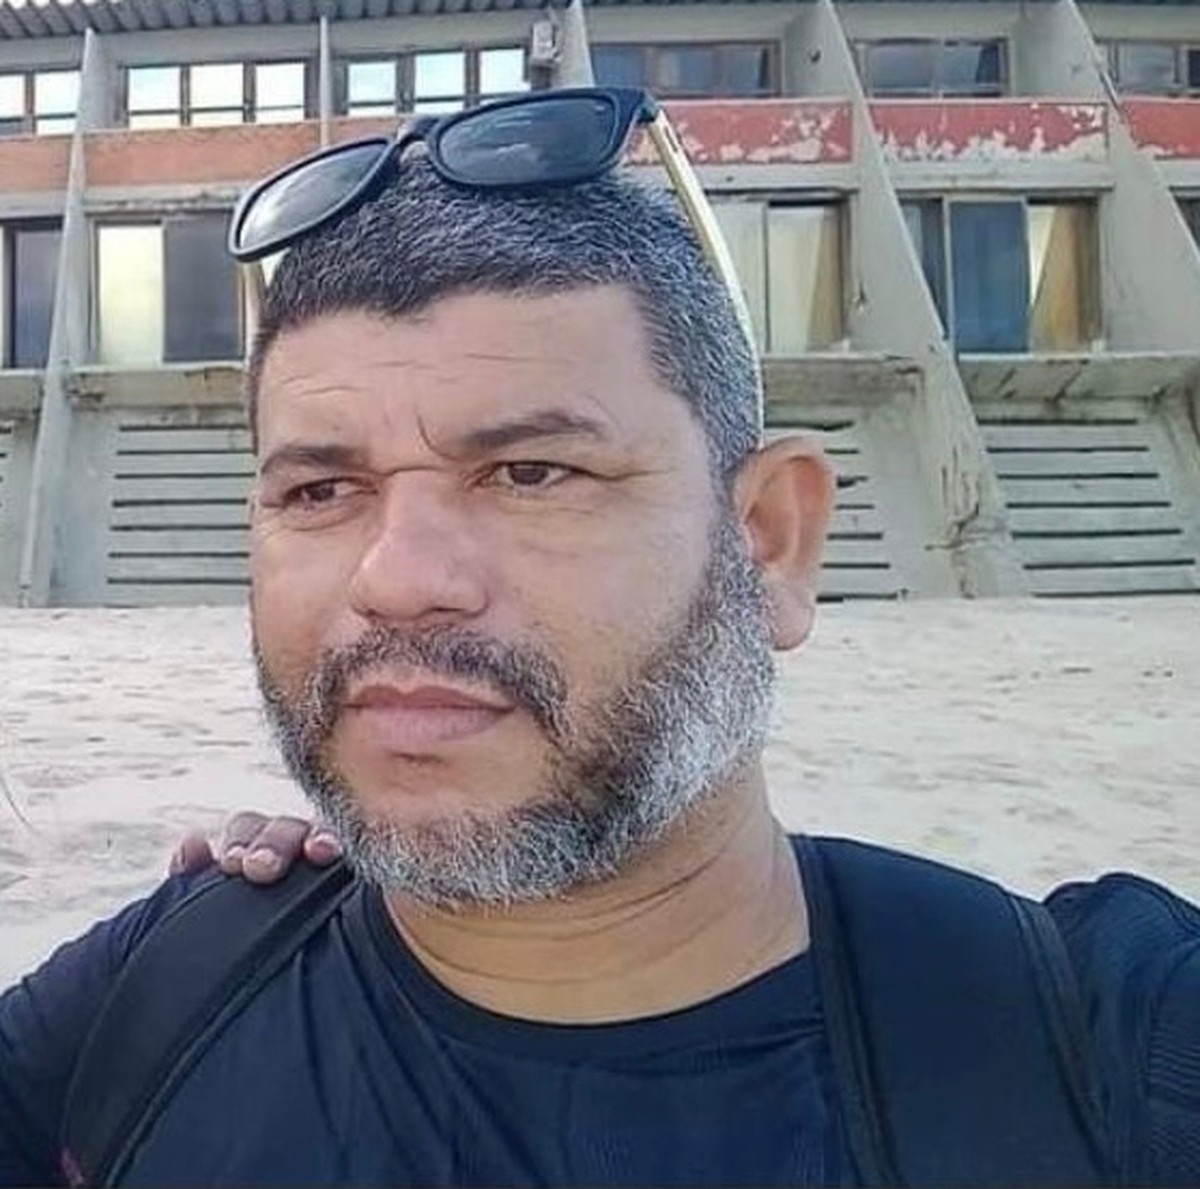 Policial Penal Morre Depois De Levar Tiro Na Cabeça Em Lava Jato De Porto Velho Rondônia G1 3037